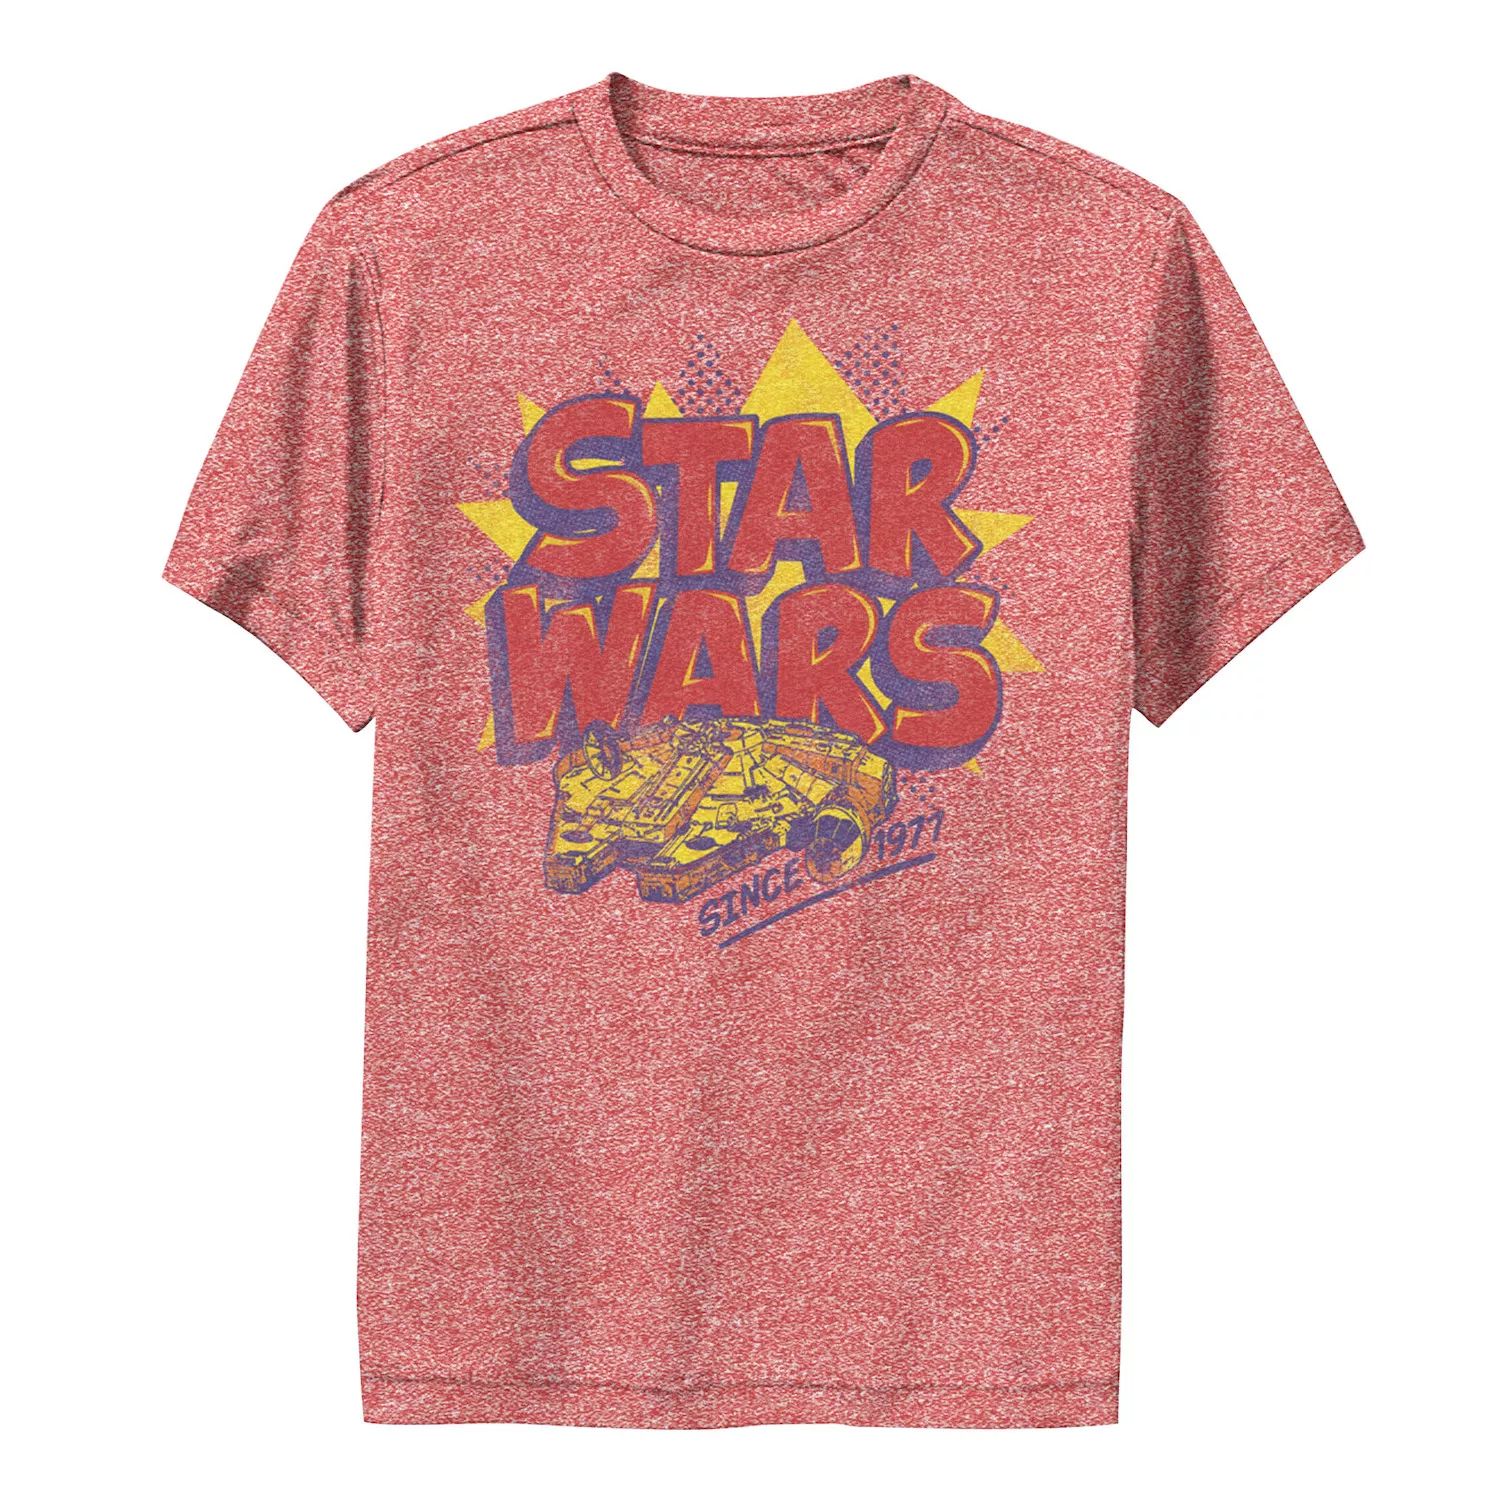 Футболка с винтажным ретро-логотипом и графическим рисунком для мальчиков 8–20 лет «Звездные войны: Сокол тысячелетия» Star Wars футболка с рисунком сокол тысячелетия для мальчиков 8–20 лет star wars